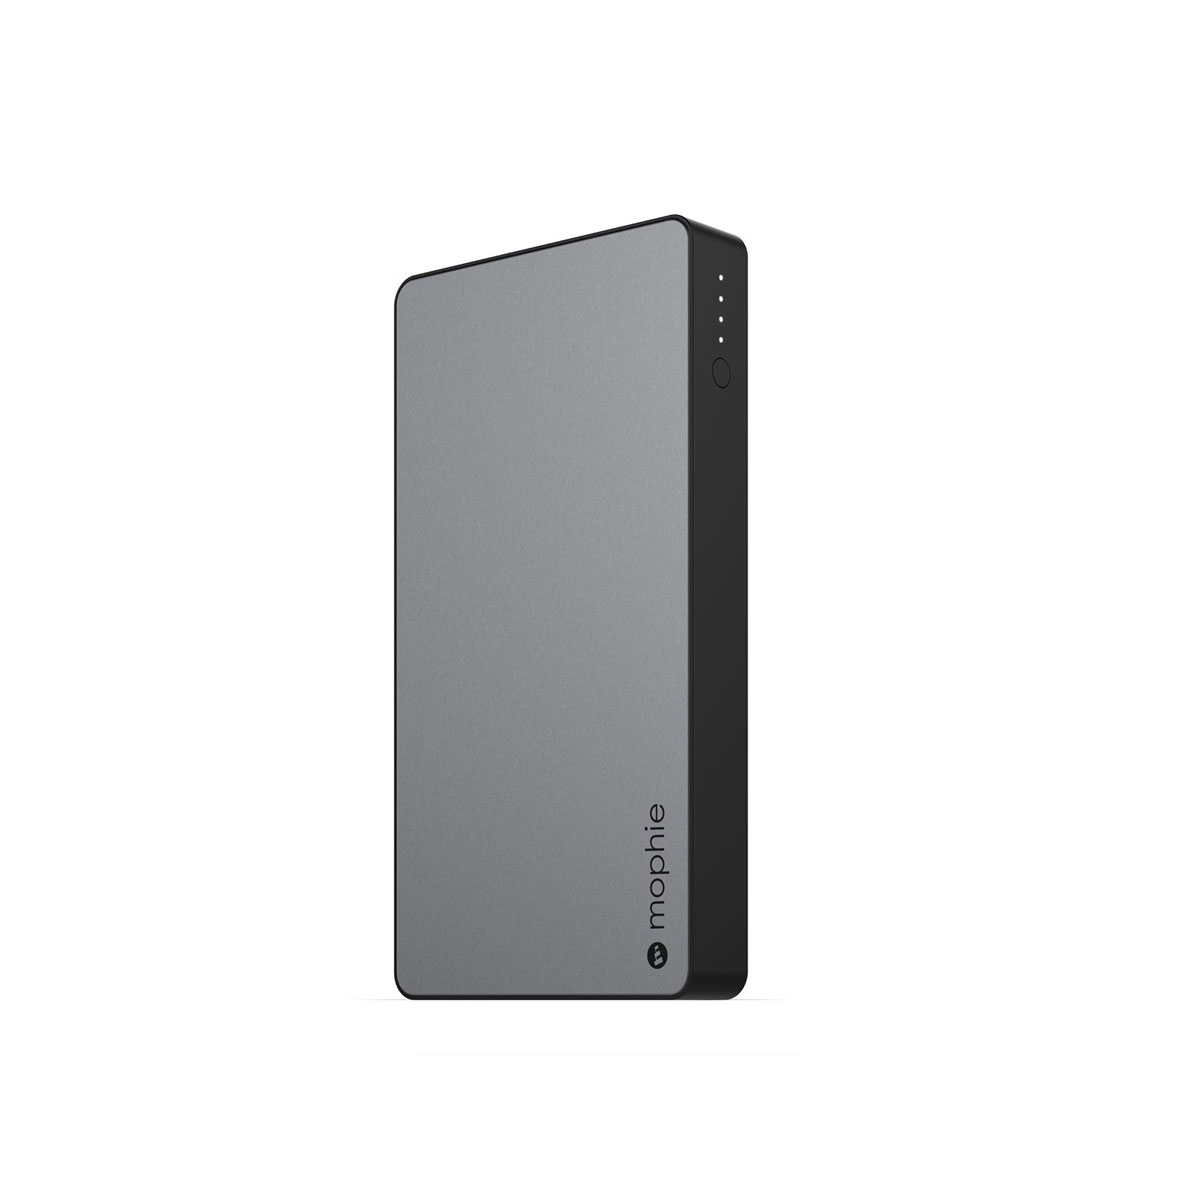 Mophie Powerstation XL 10K mAh External Battery - Space Gray